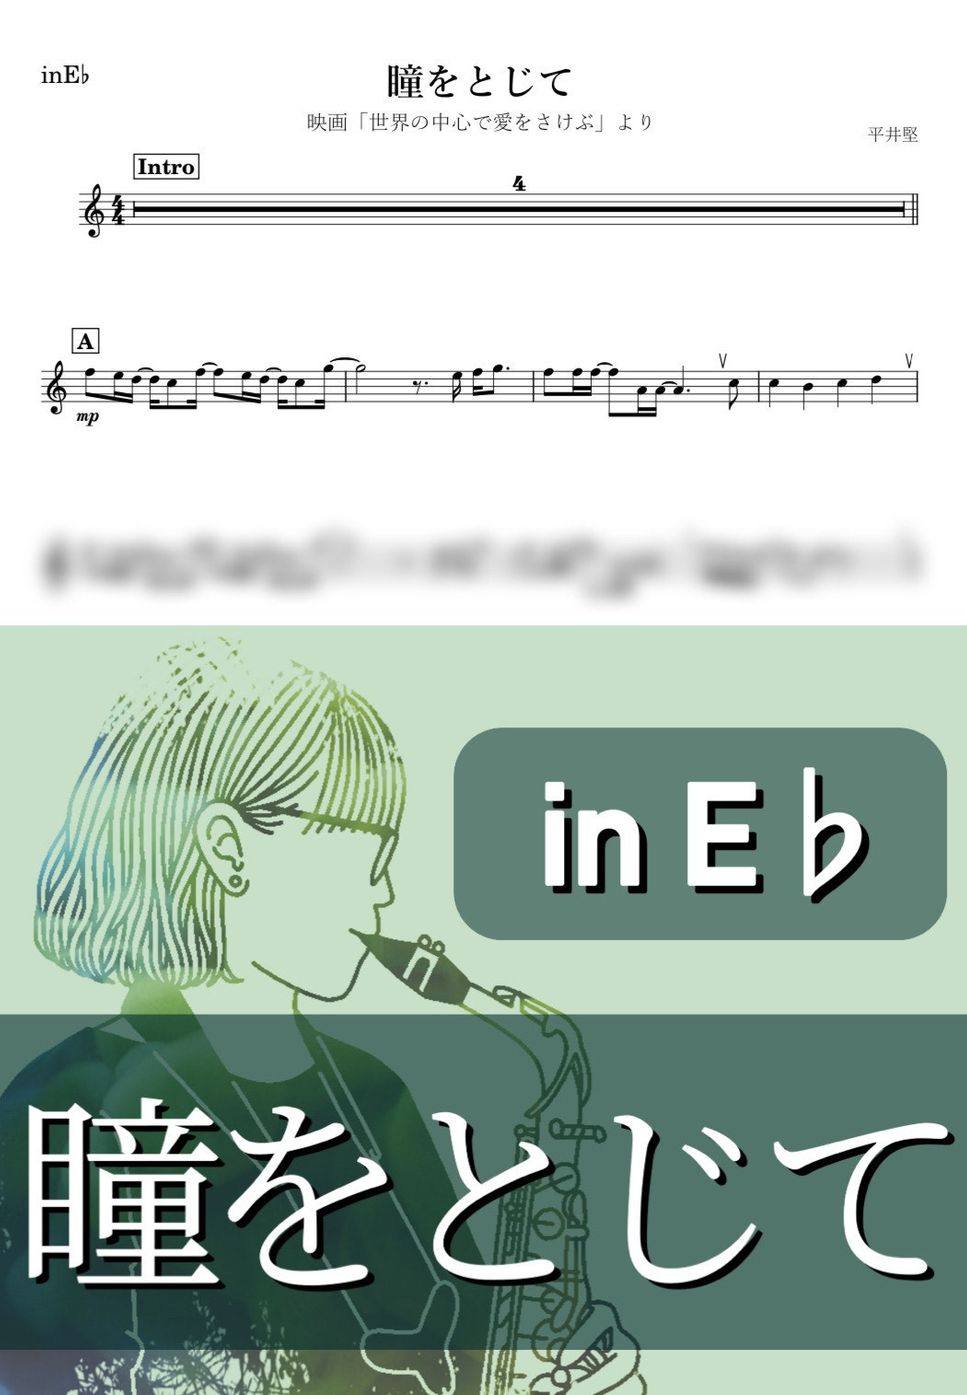 平井堅 - 瞳をとじて (E♭) by kanamusic